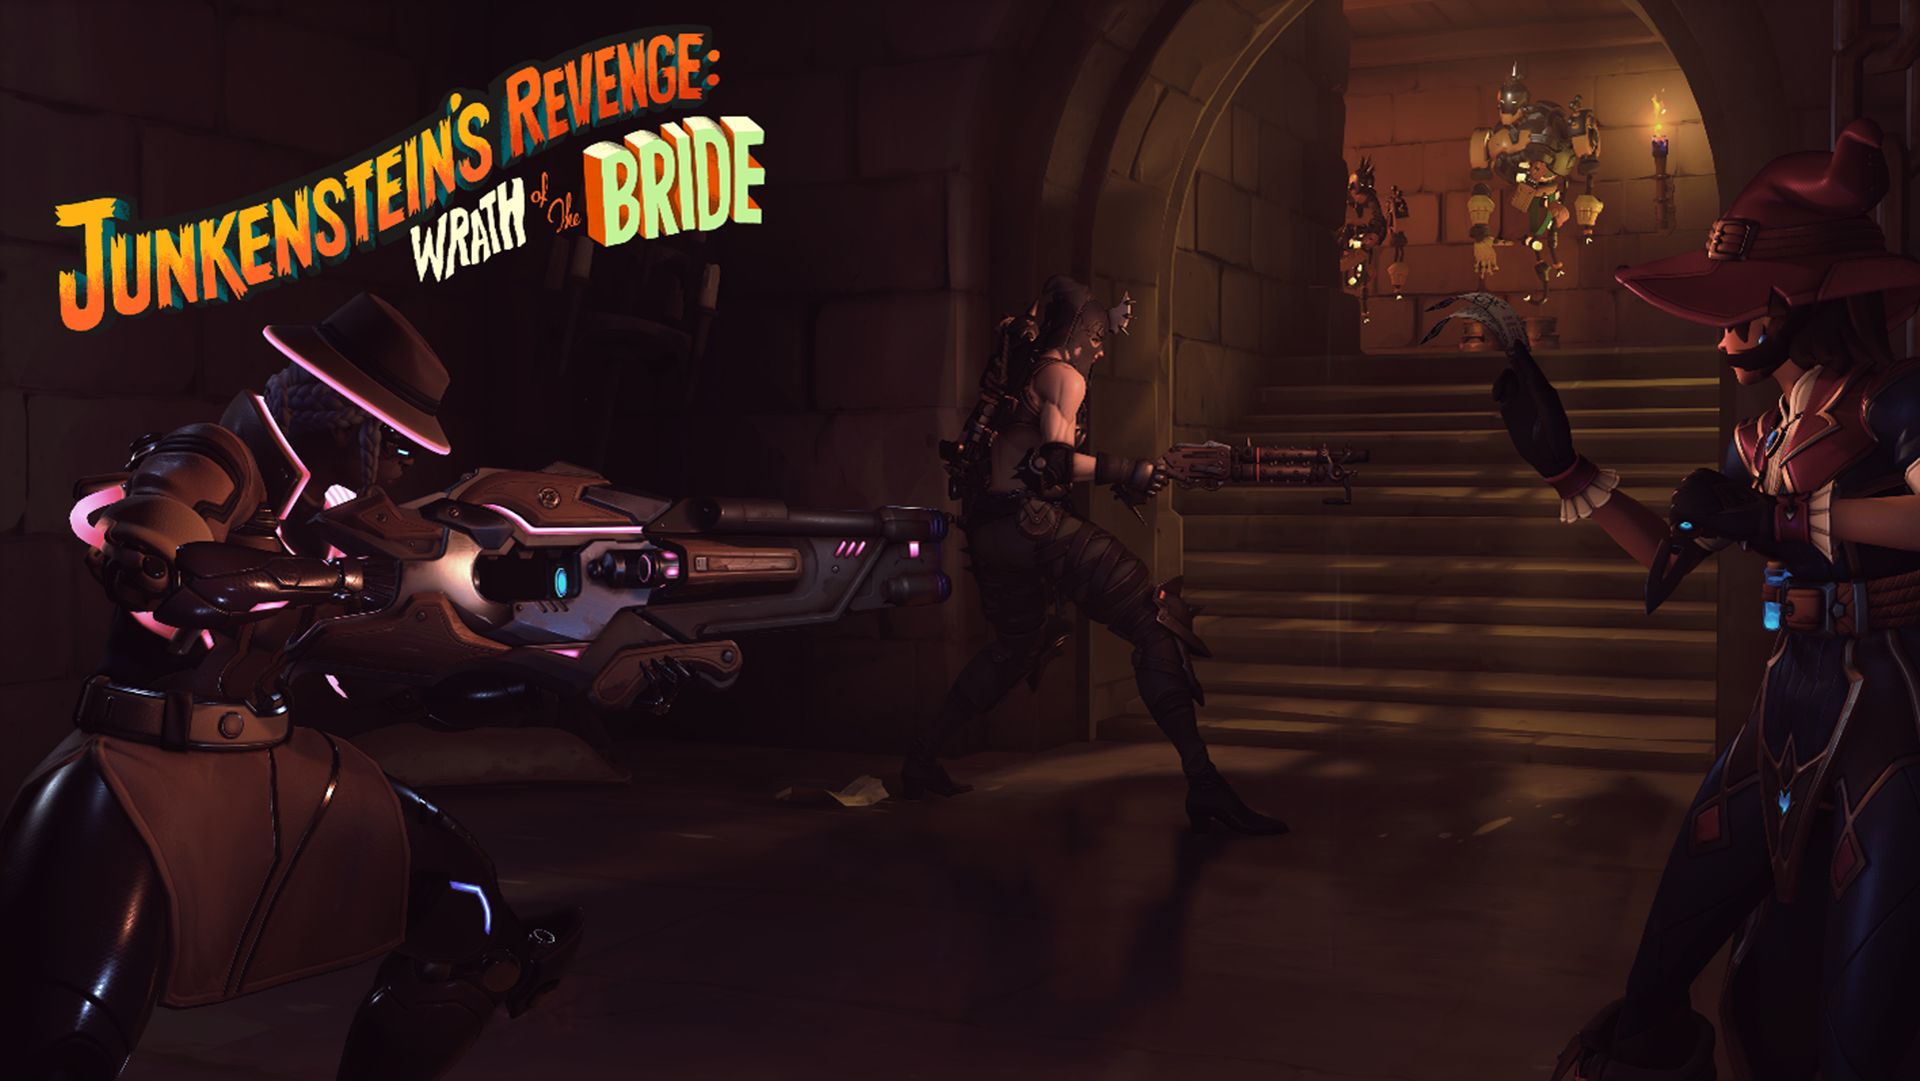 Overwatch 2 - Junkenstein's Revenge_Wrath of the Bride